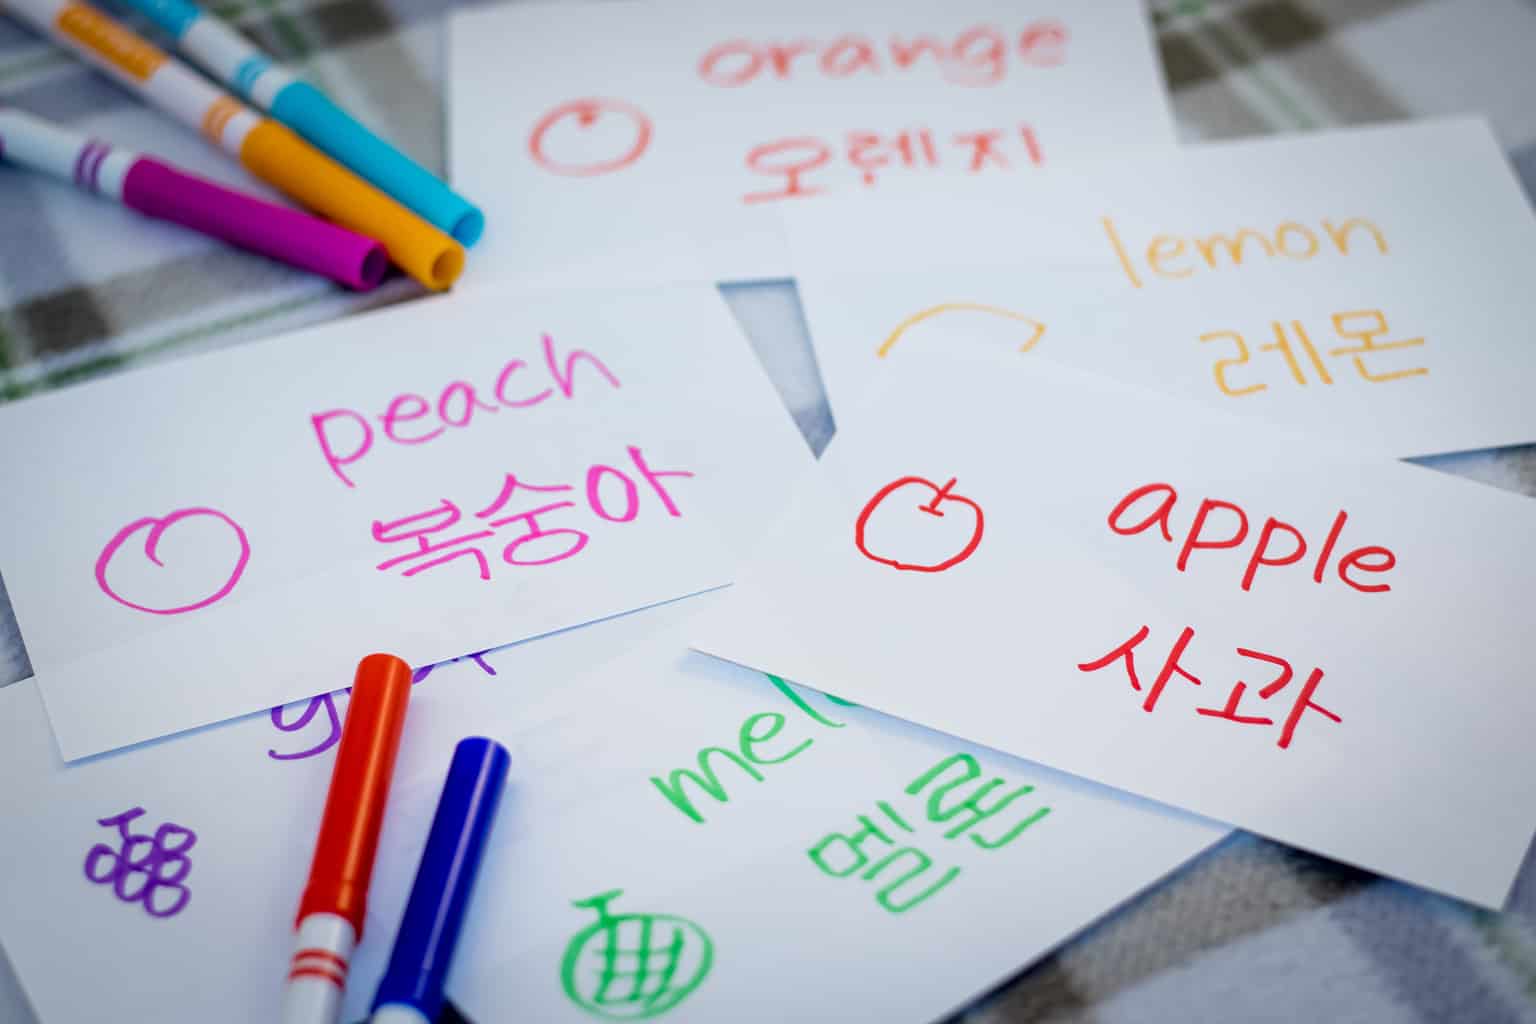 آموزش کره ای